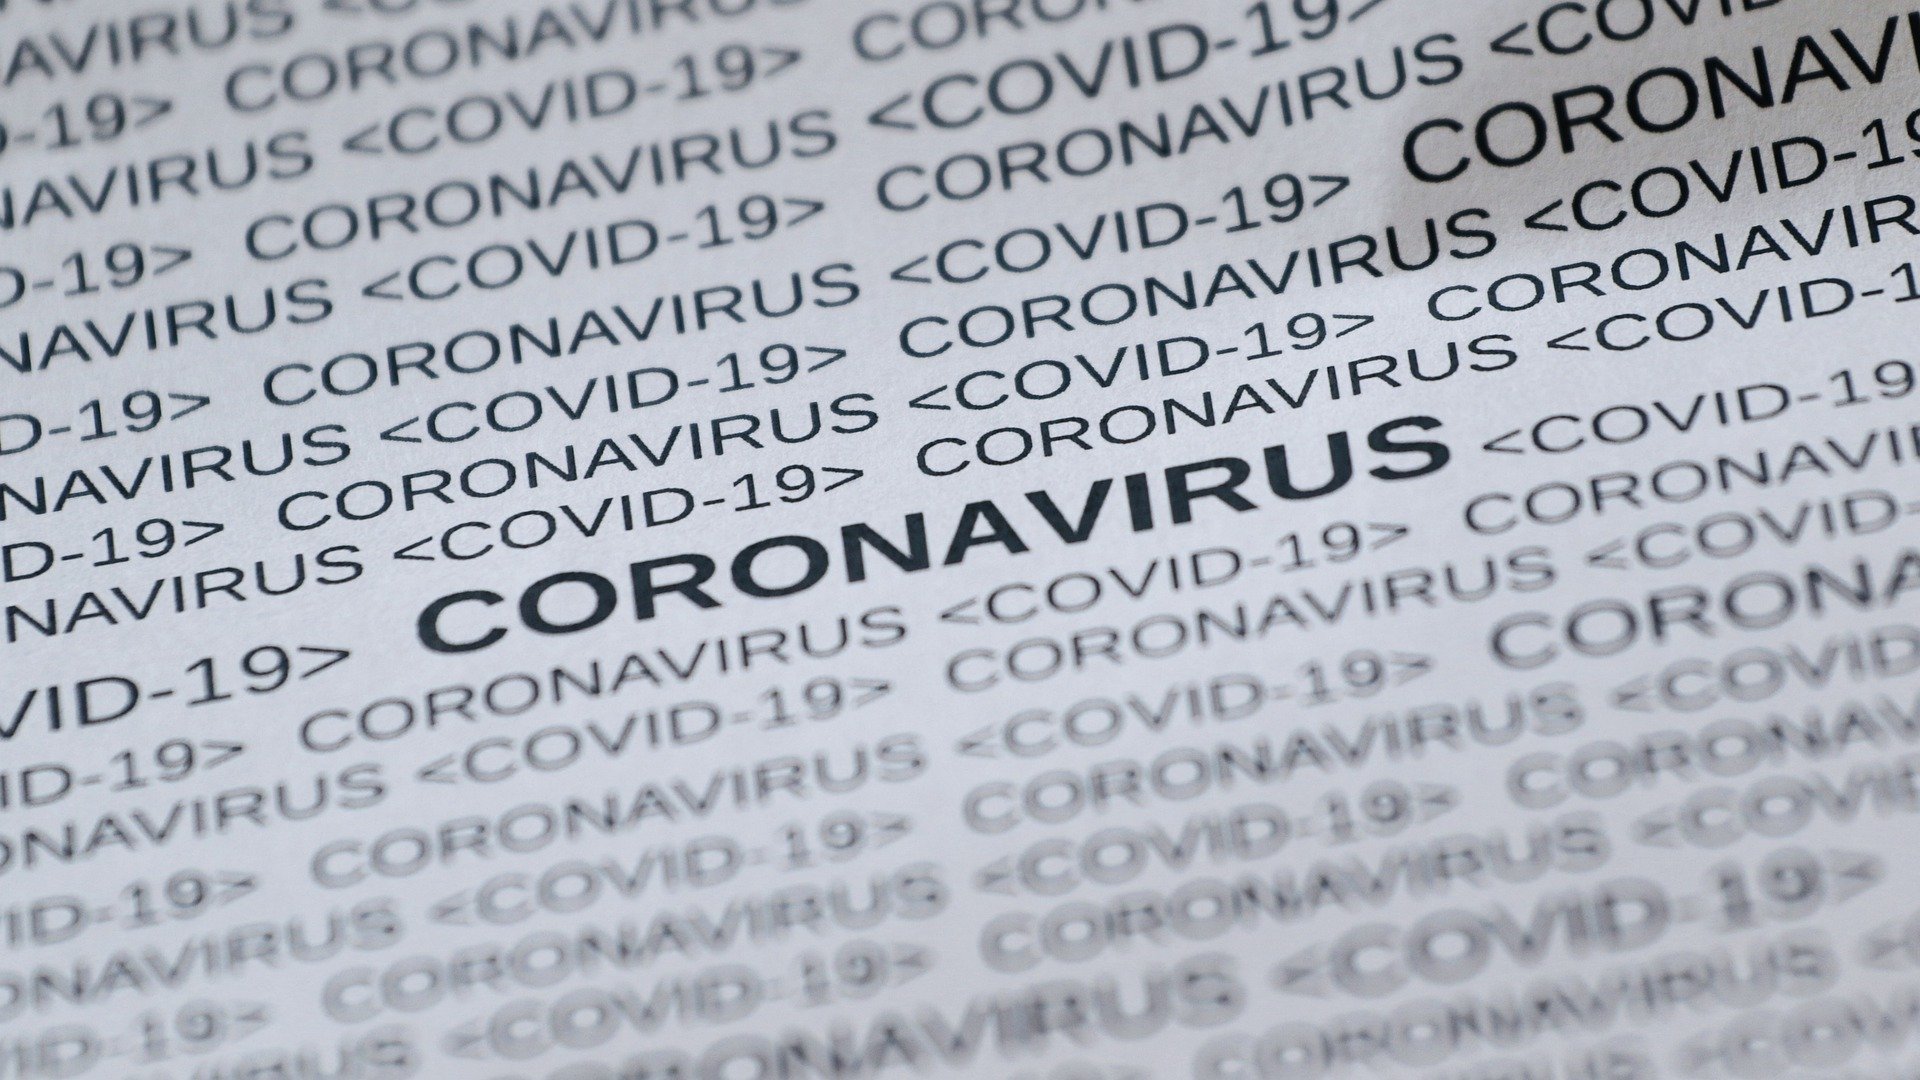 Noudatathan ensisijaisesti viranomaisten antamia ohjeita siitä, miten tulee toimia koronaviruksen ehkäisemiseen, tartuntaepäilyyn tai muihin koronavirukseen liittyvissä asioissa.